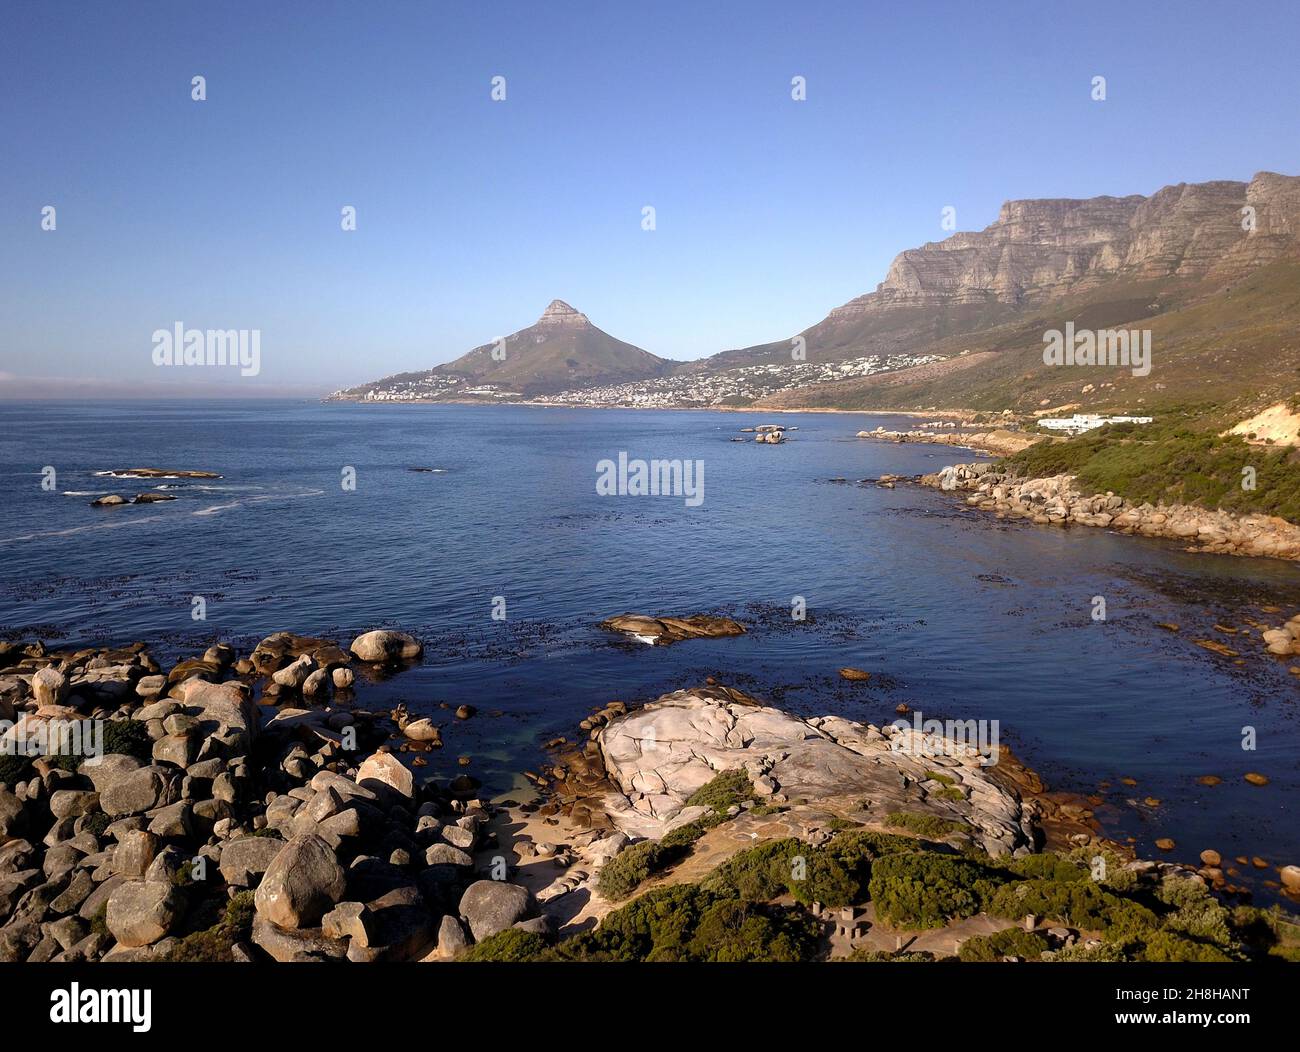 Vue aérienne sur la mer à Oudekraal jusqu'au Cap, Afrique du Sud Banque D'Images